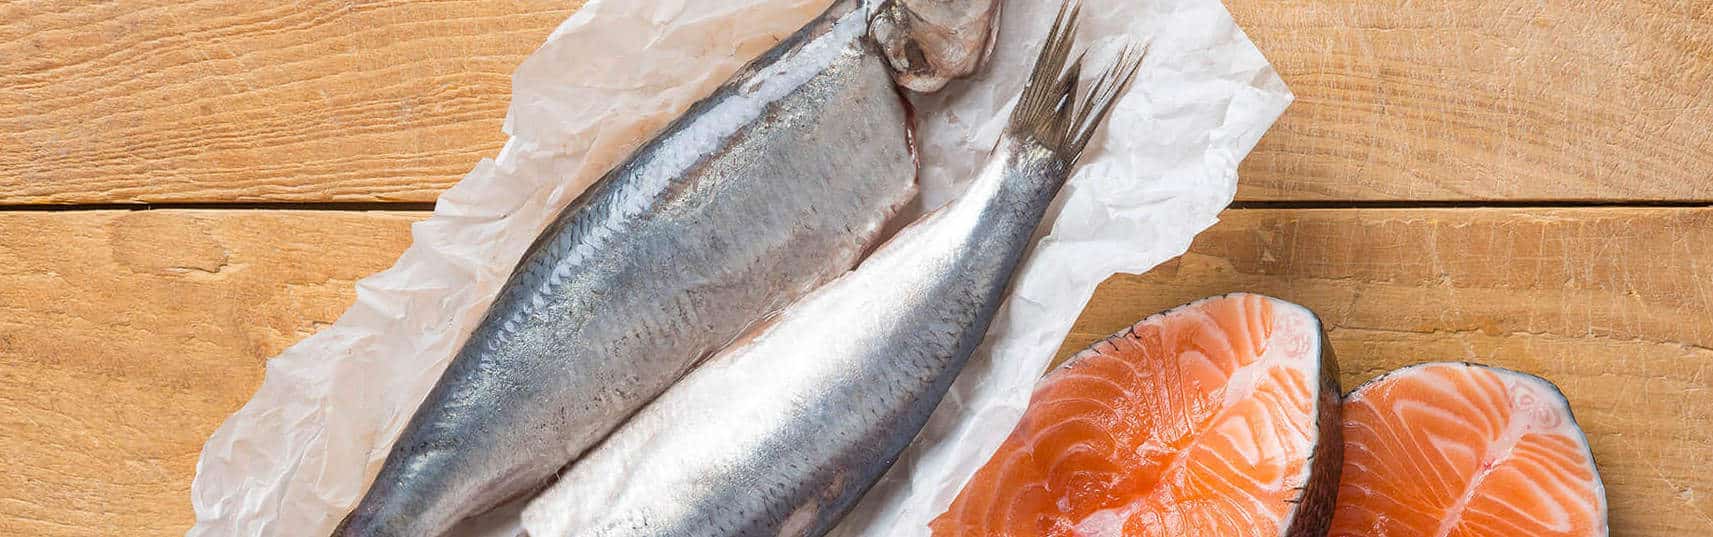 Groenland Integreren dreigen Vette vis en omega-3: welke vissen bevatten omega-3? | Davitamon